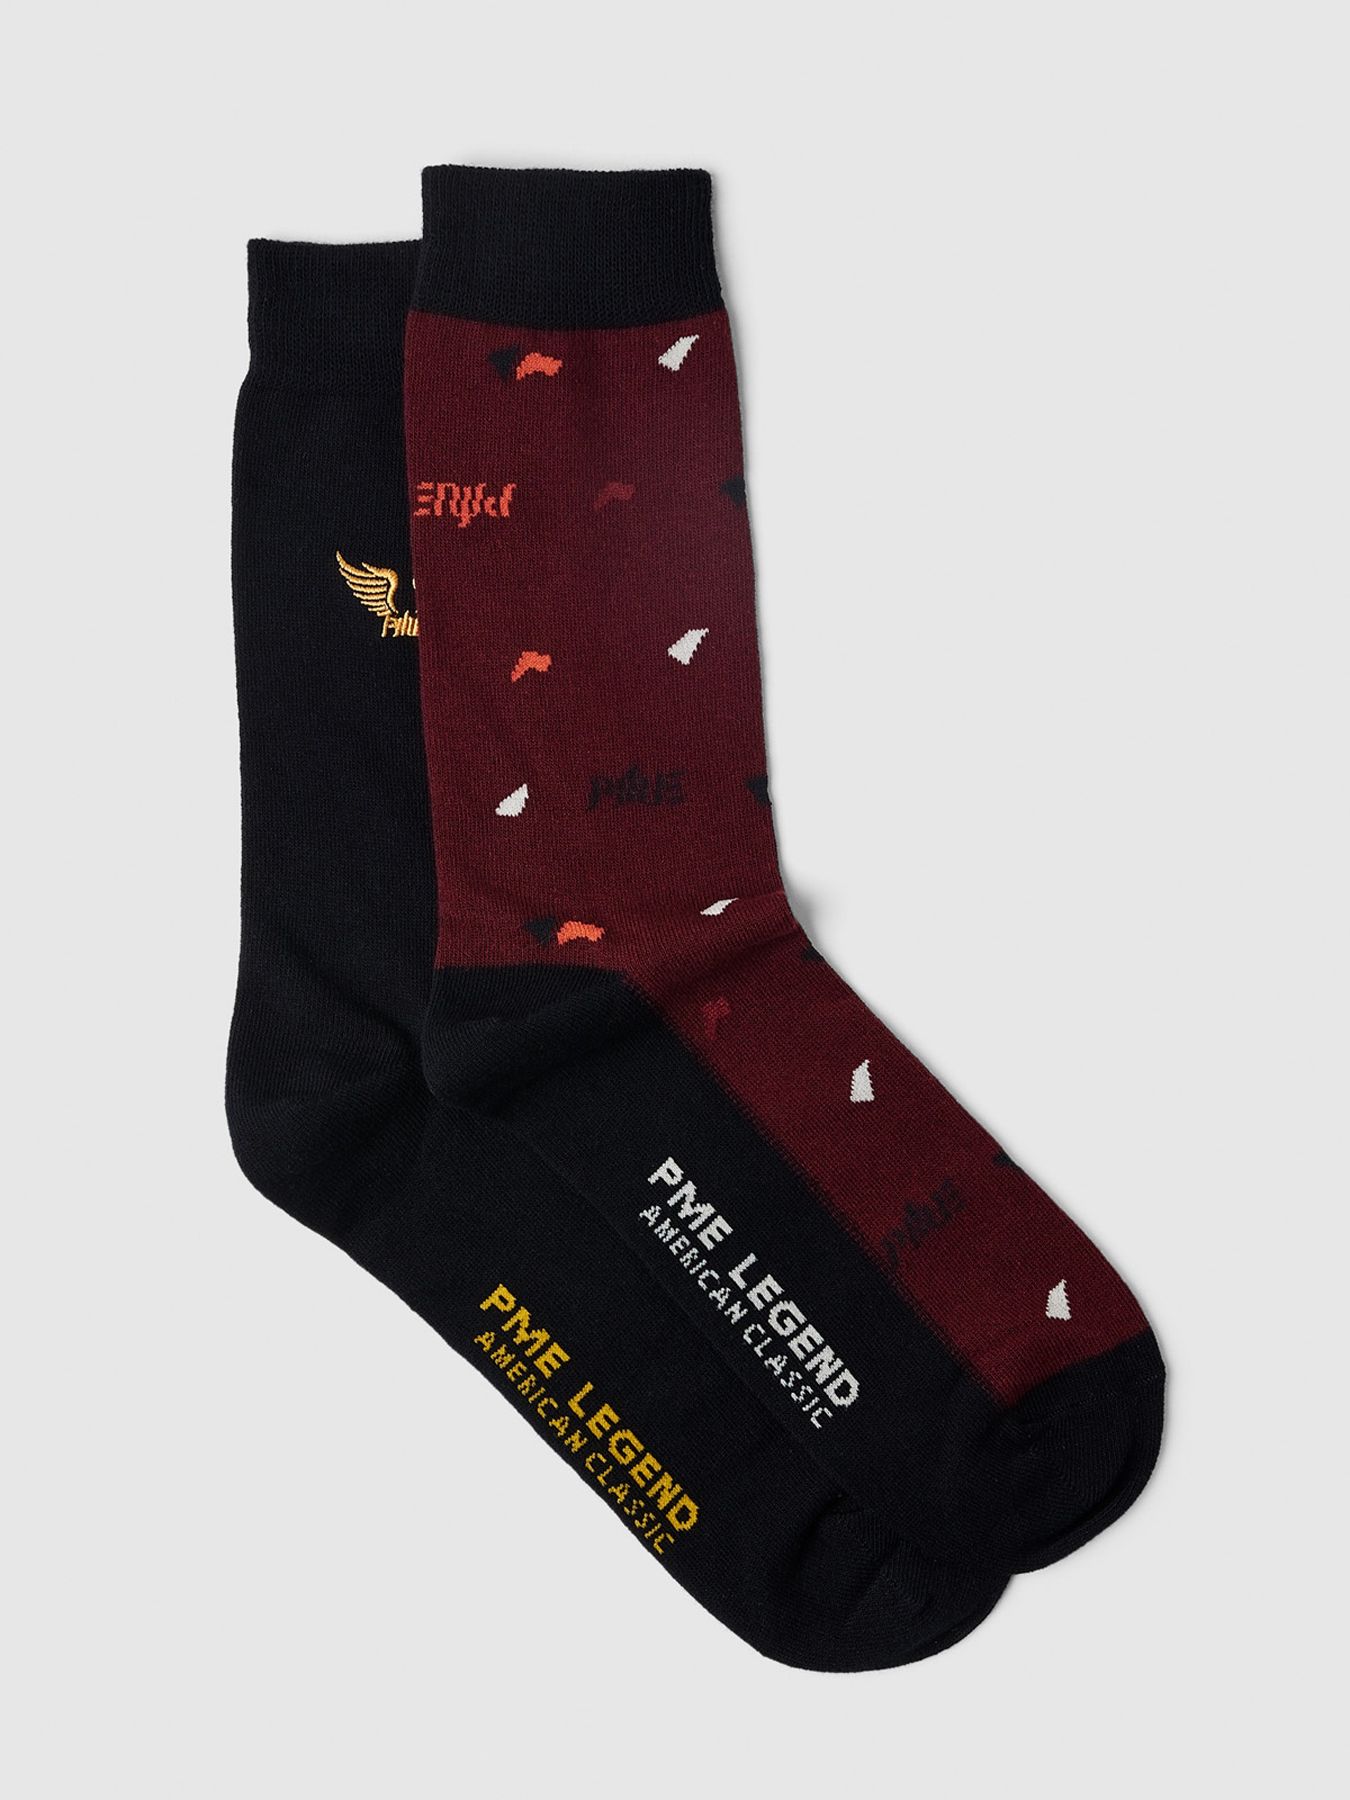 Pme Legend Socks Cotton blend socks 2-pack Rosewood 00105123-3182